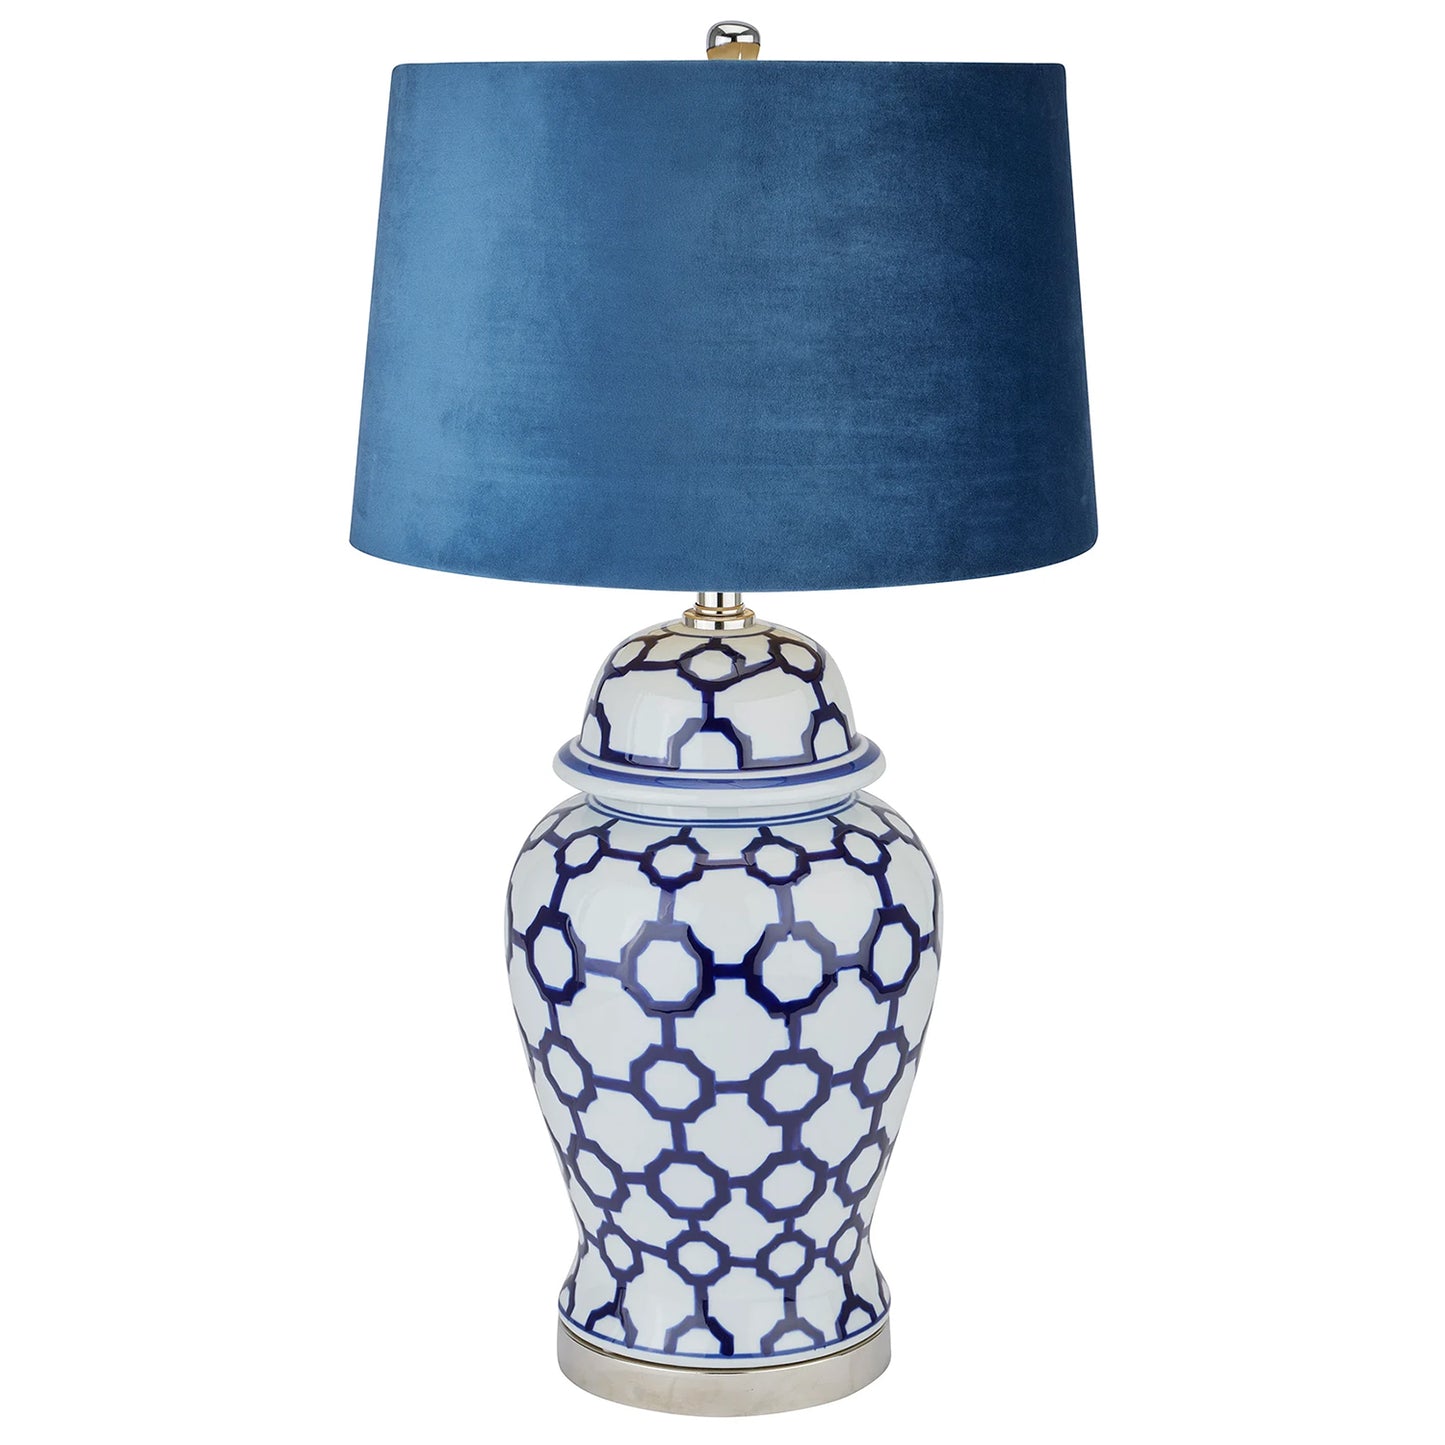 Acanthus blue and white ceramic lamp